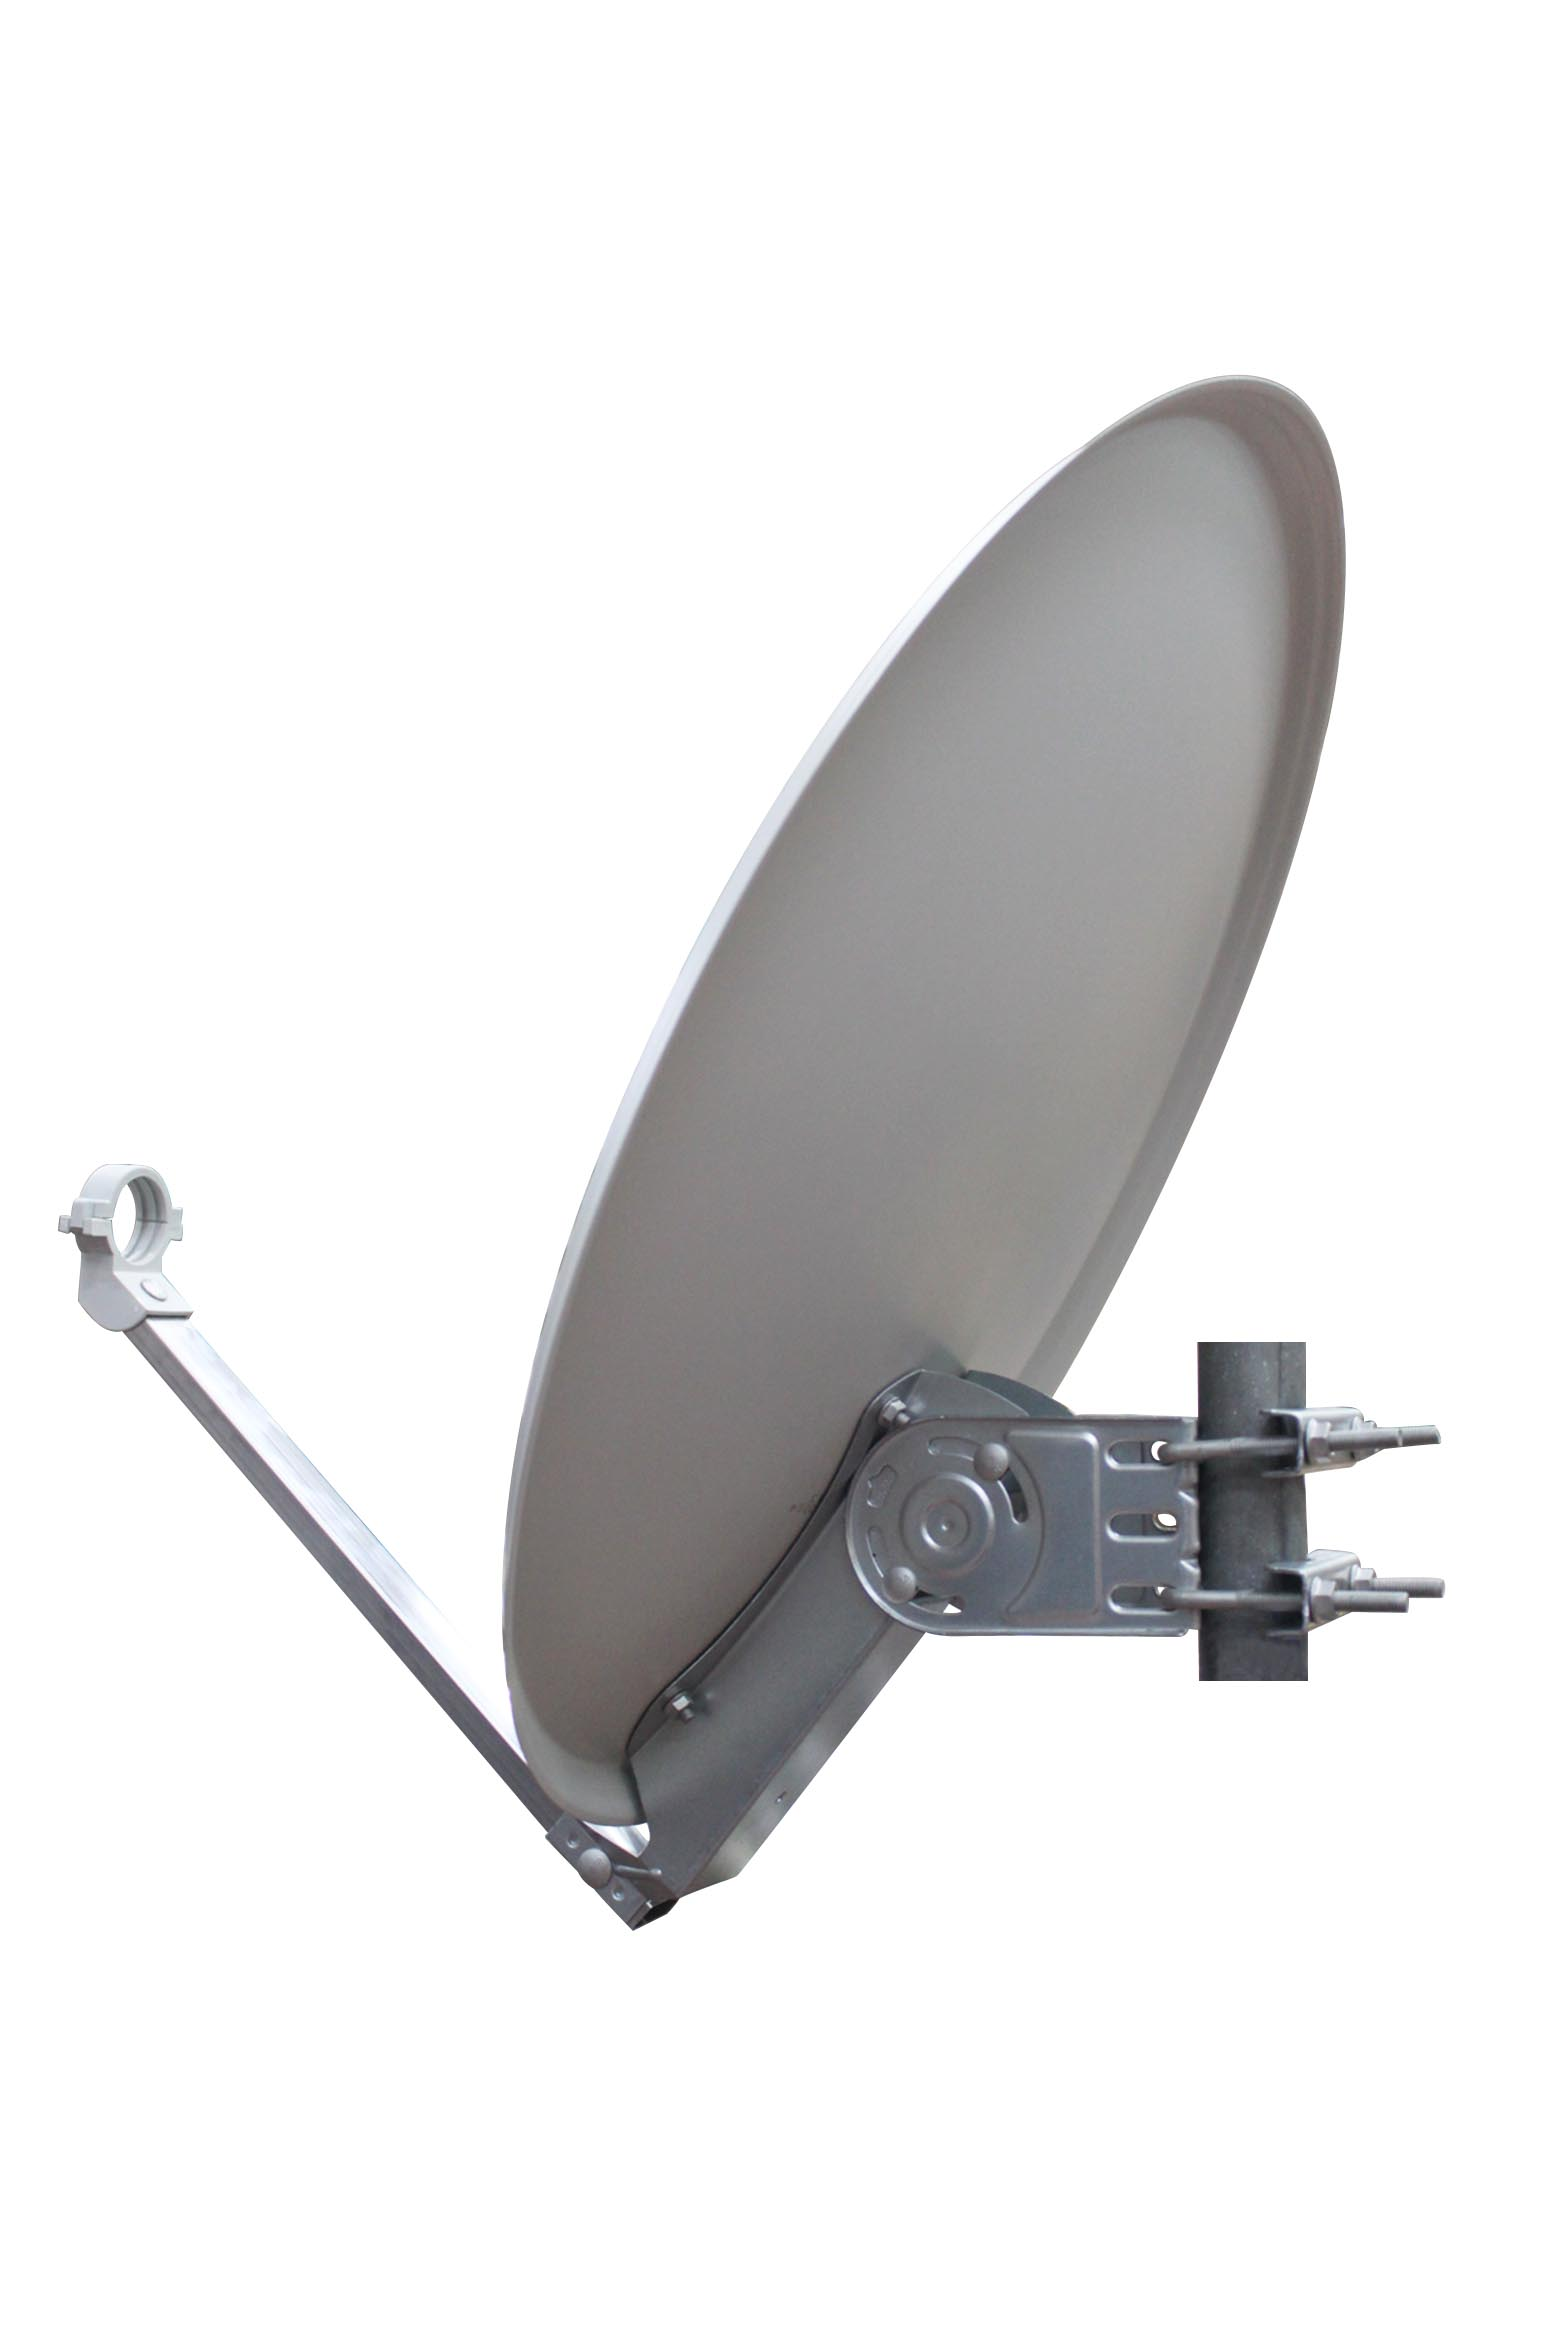 RED OPTICUM QA-60 HD aus & cm Sat-Antenne Satellitenschüssel 60 lichtgrau-4K Stahl Satellitenantenne fähig-Witterungsbeständige 3D